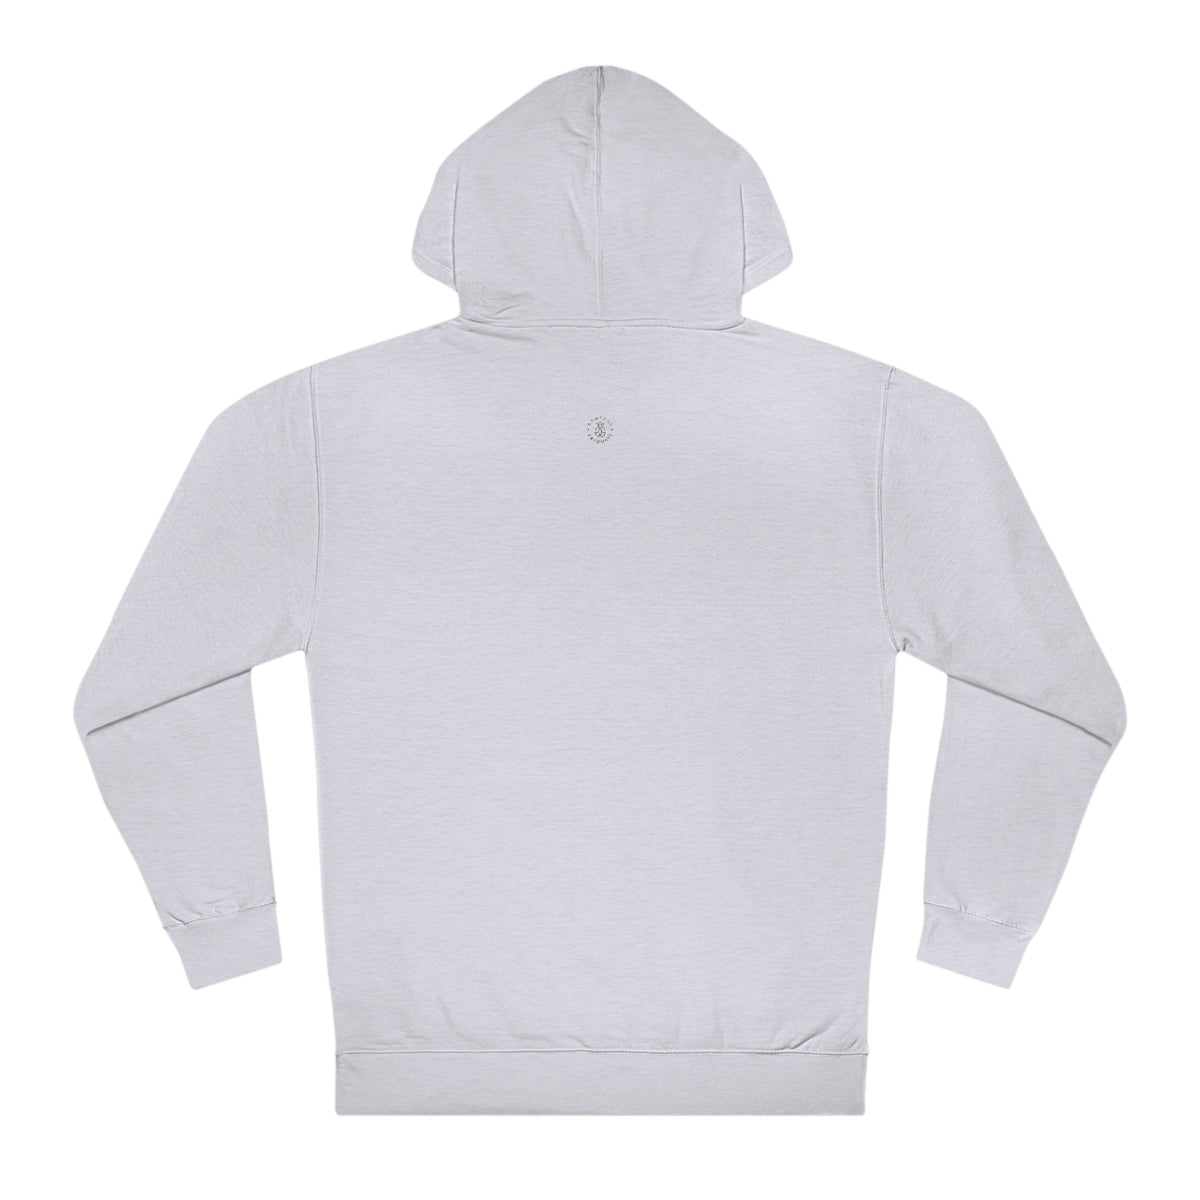 Smiley Champaign Hooded Sweatshirt - GG - ITC